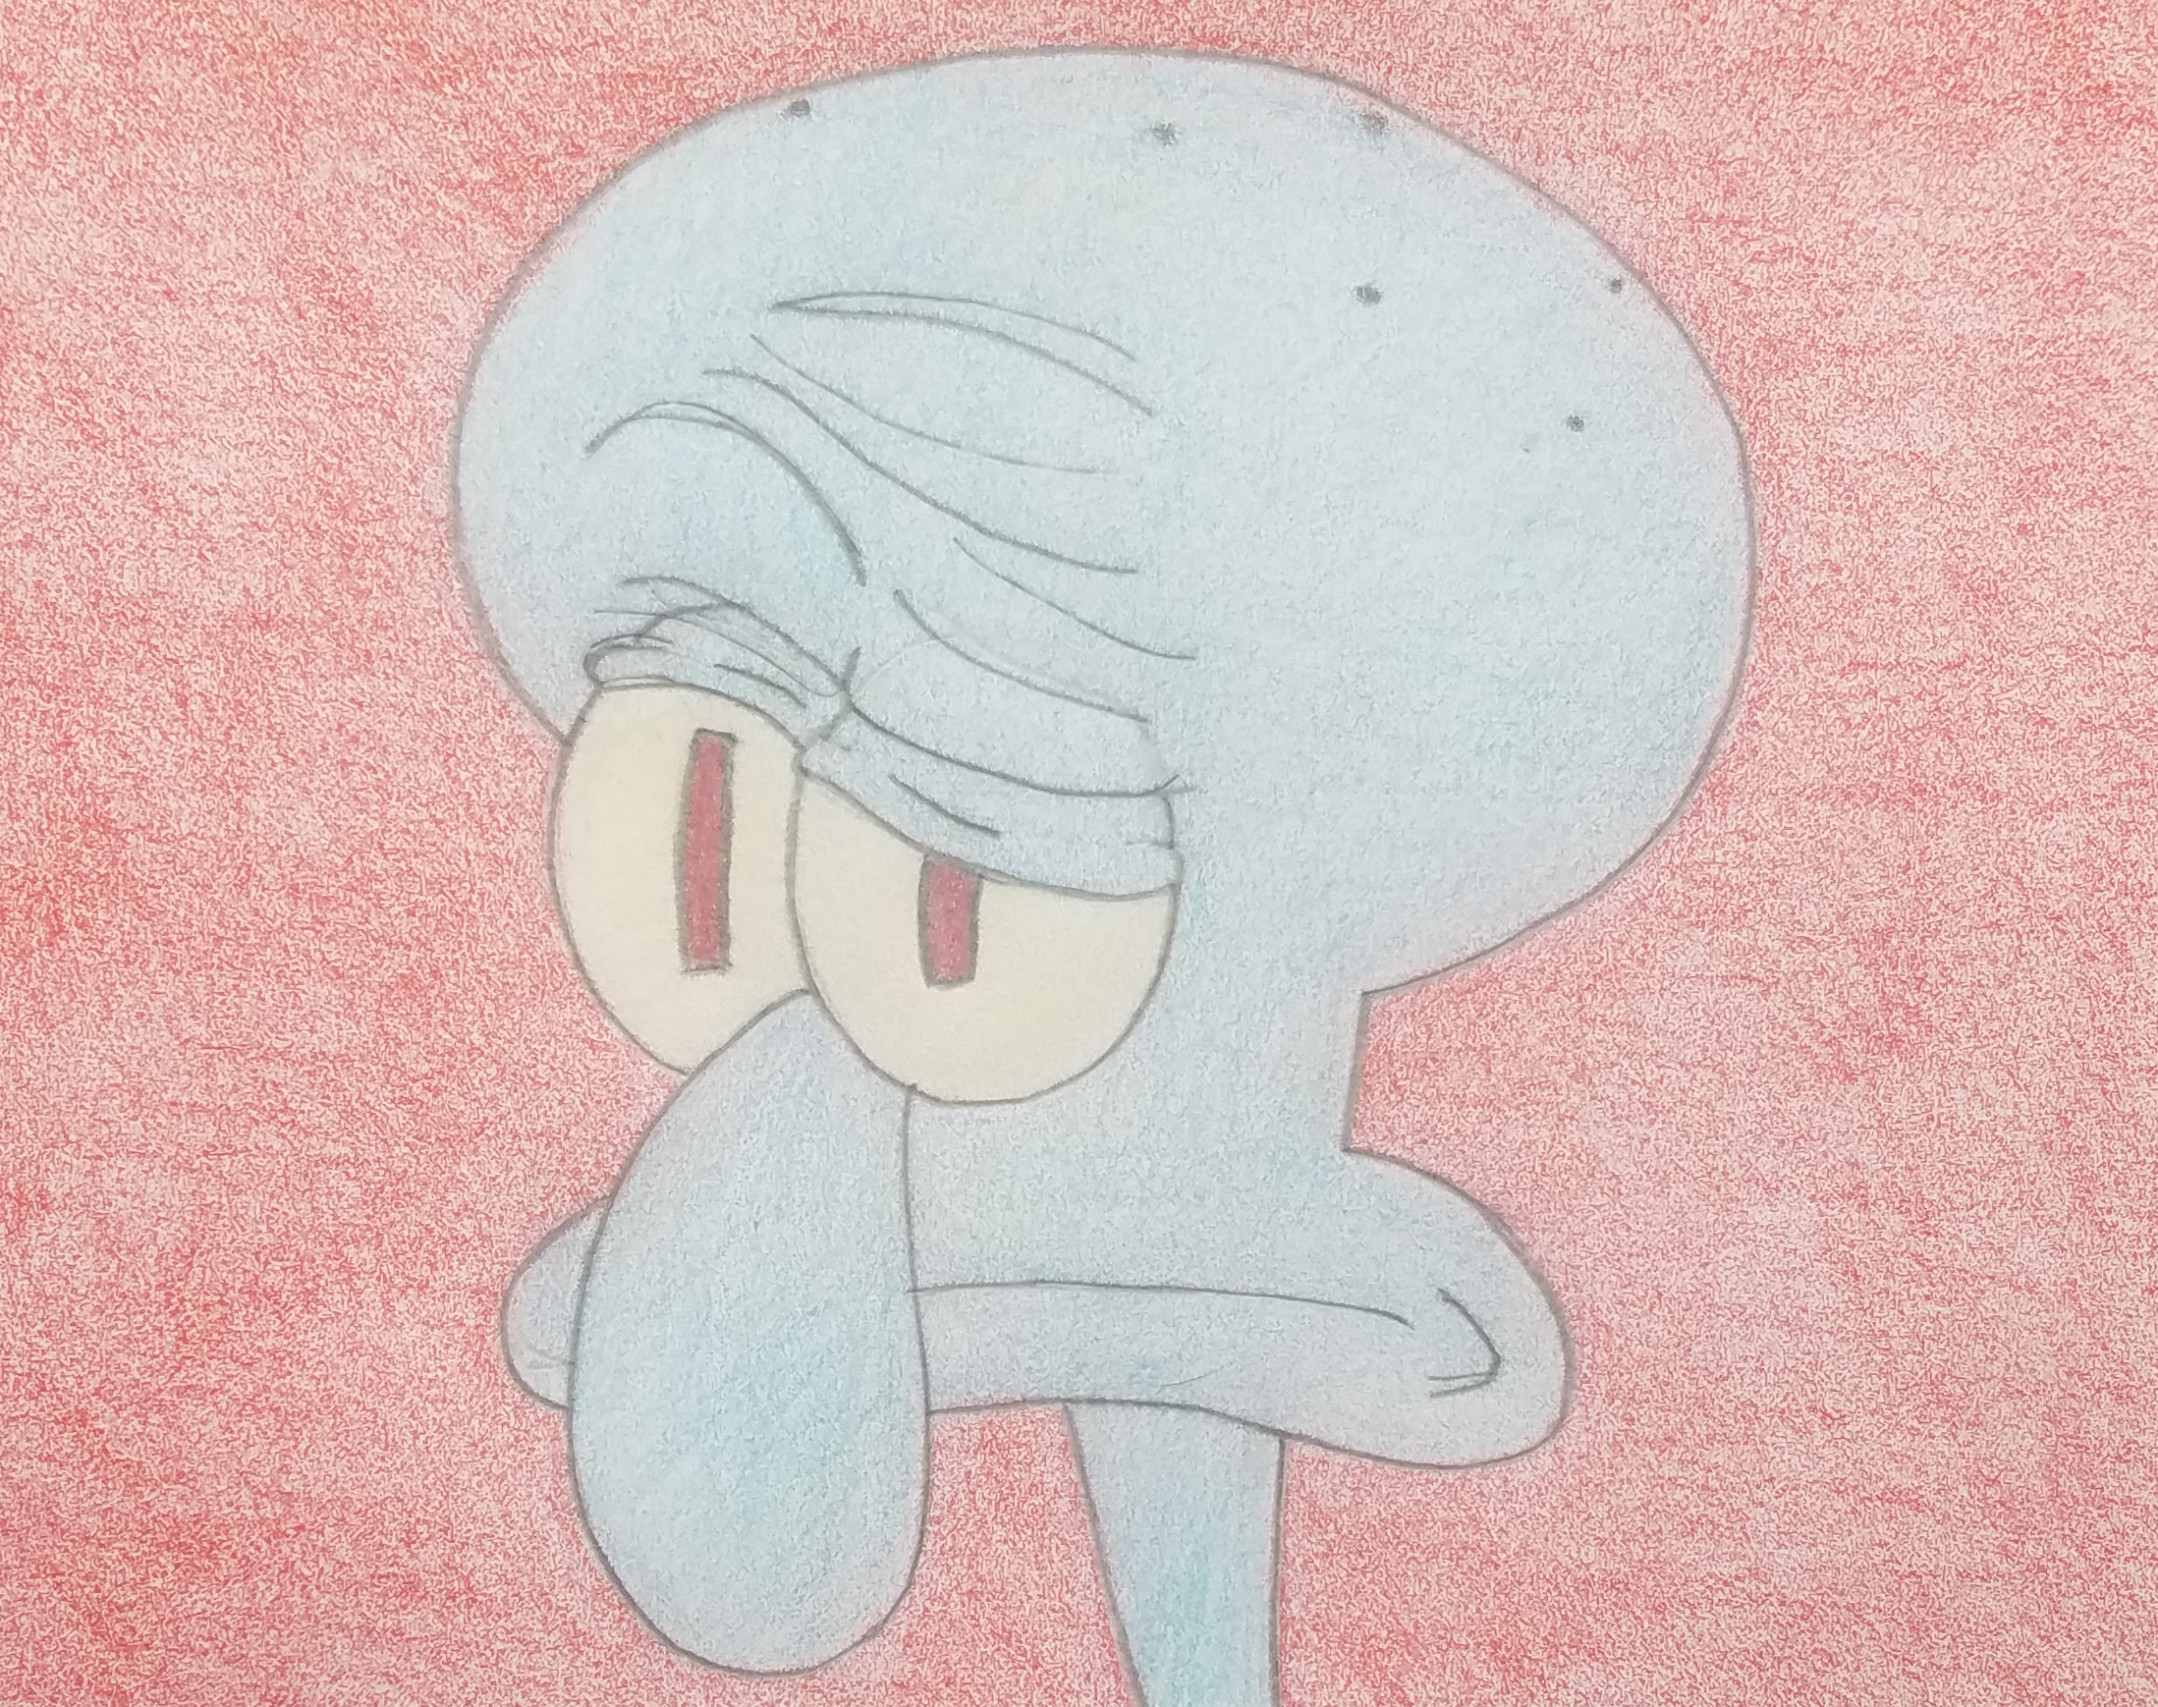 squidward sad face